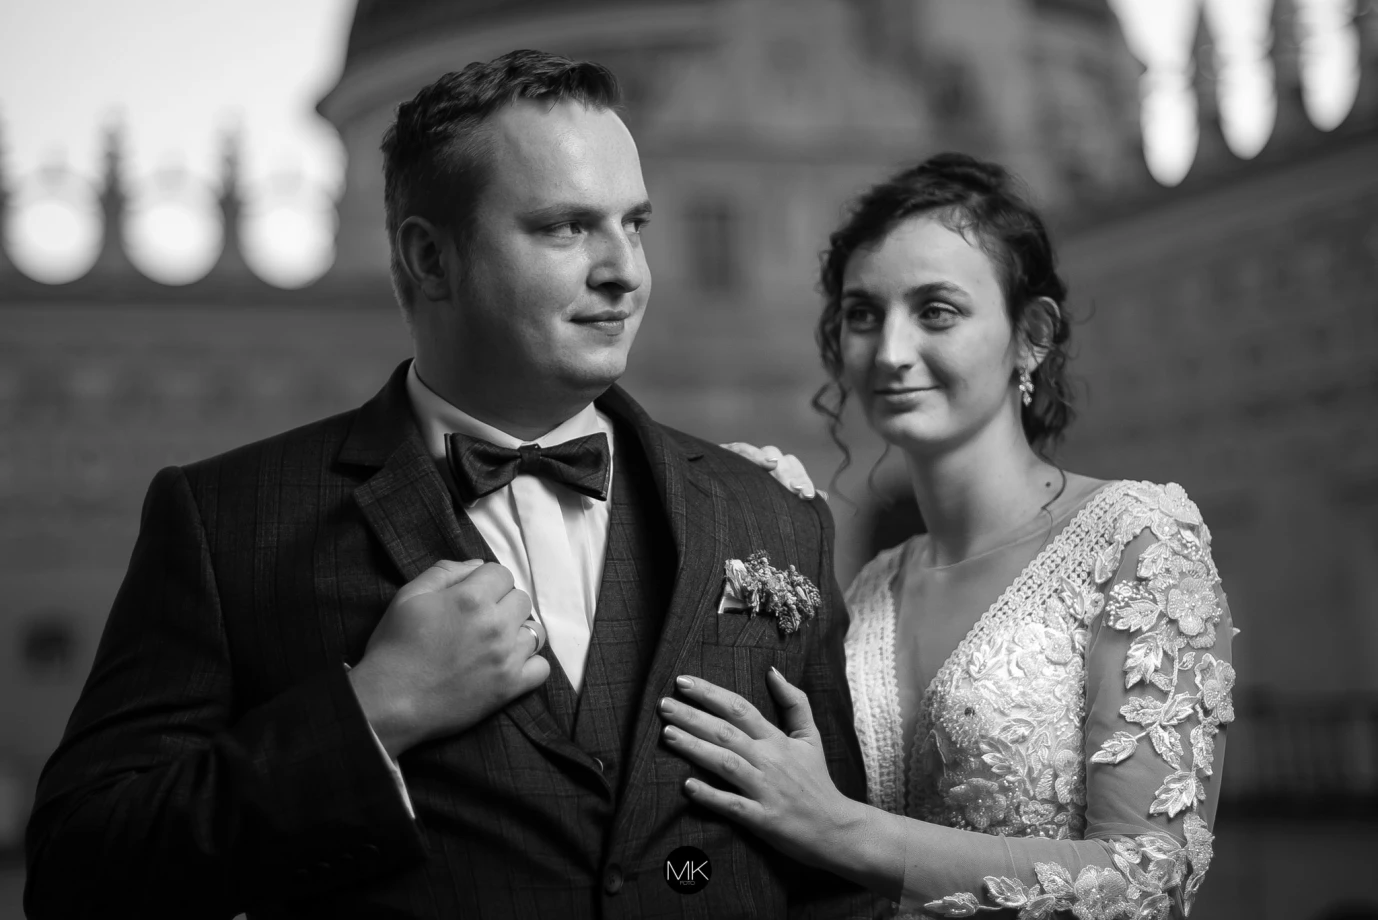 zdjęcia jaroslaw fotograf mkfoto-michal-krawiec portfolio zdjecia slubne inspiracje wesele plener slubny sesja slubna